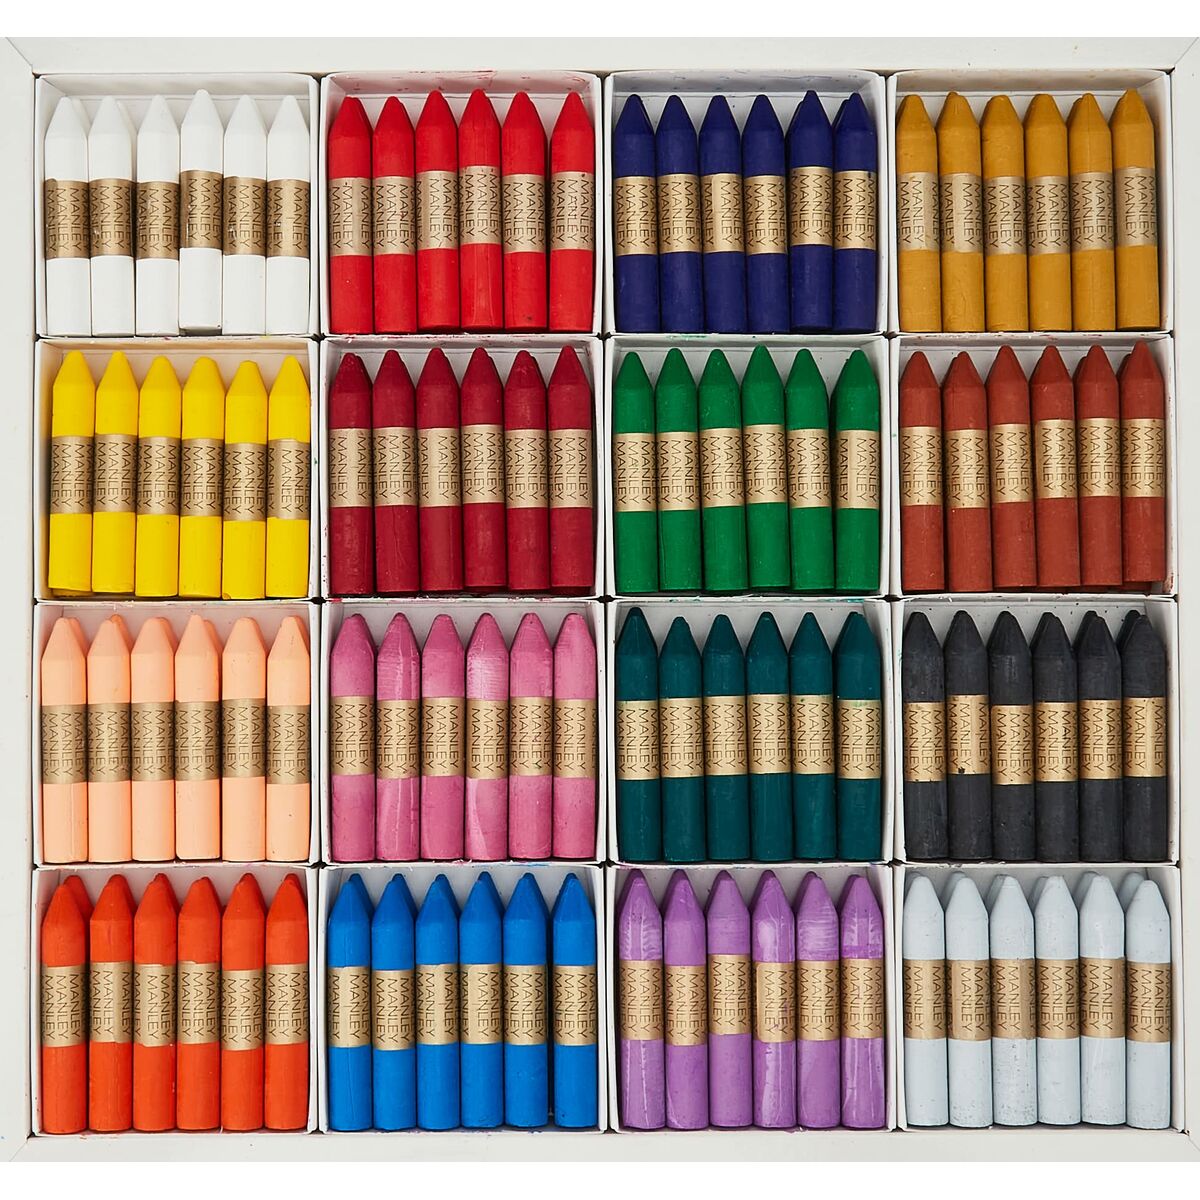 Tjocka färgpennor Manley ClassBox 192 Delar Multicolour-Leksaker och spel, Kreativa aktiviteter-Manley-peaceofhome.se